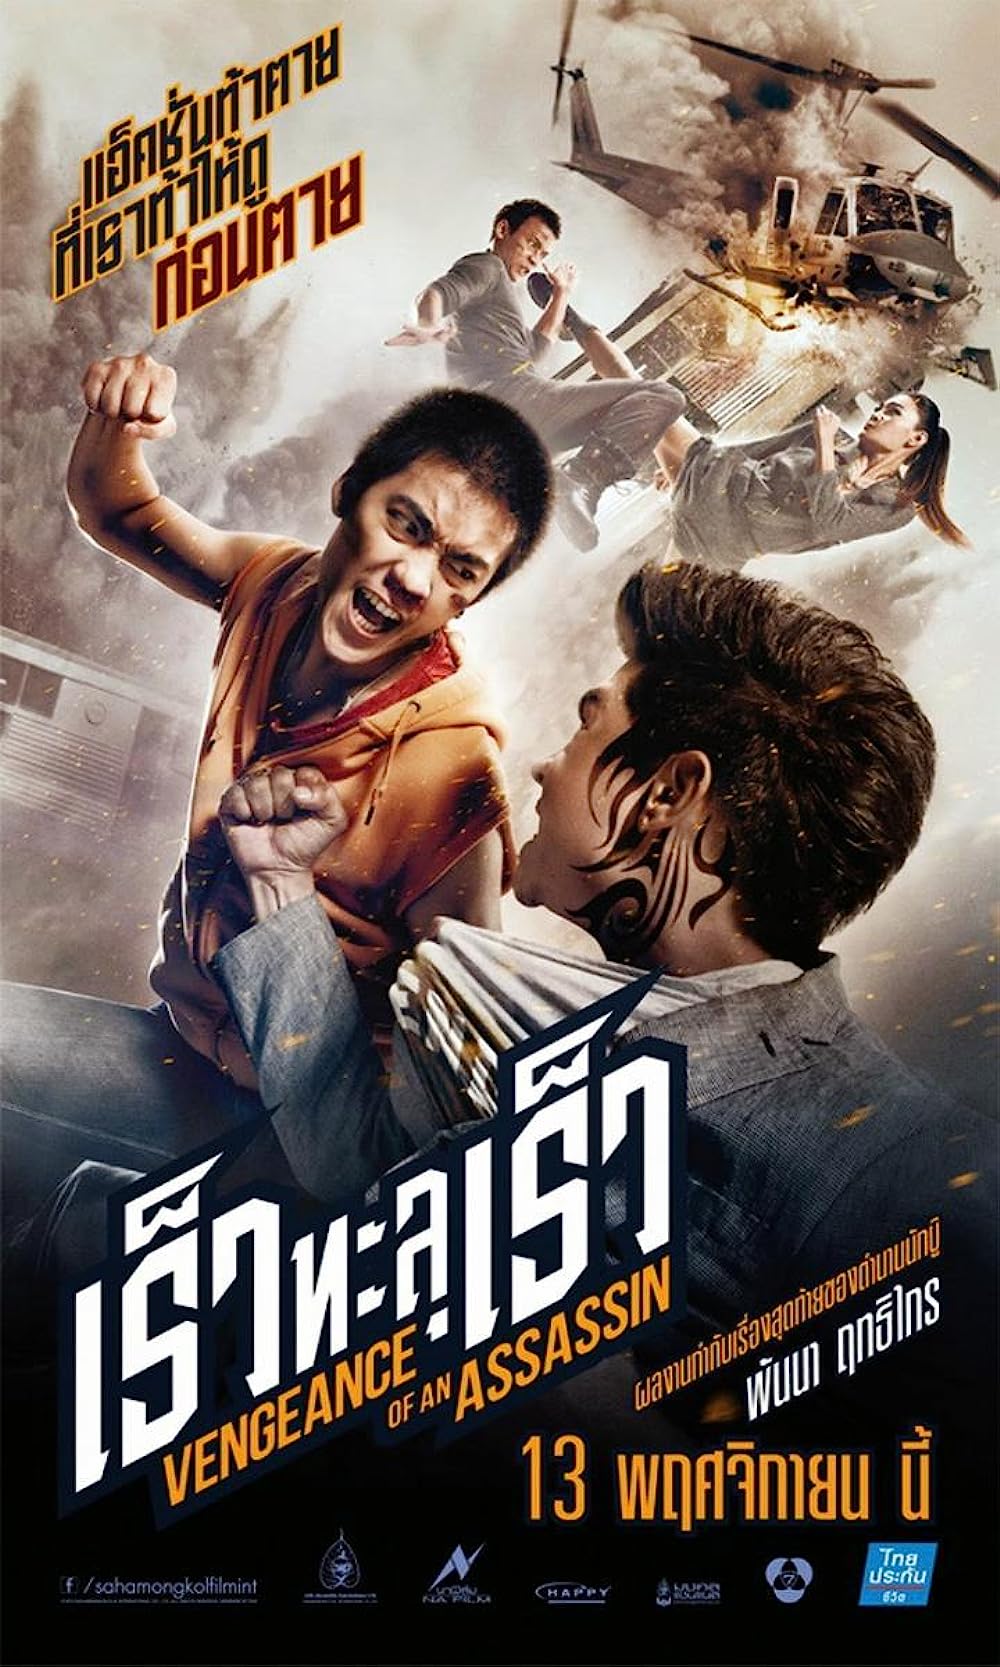 ดูหนังออนไลน์ฟรี ดูหนังฟรี Vengeance of an Assassin 2014 พากย์ไทย